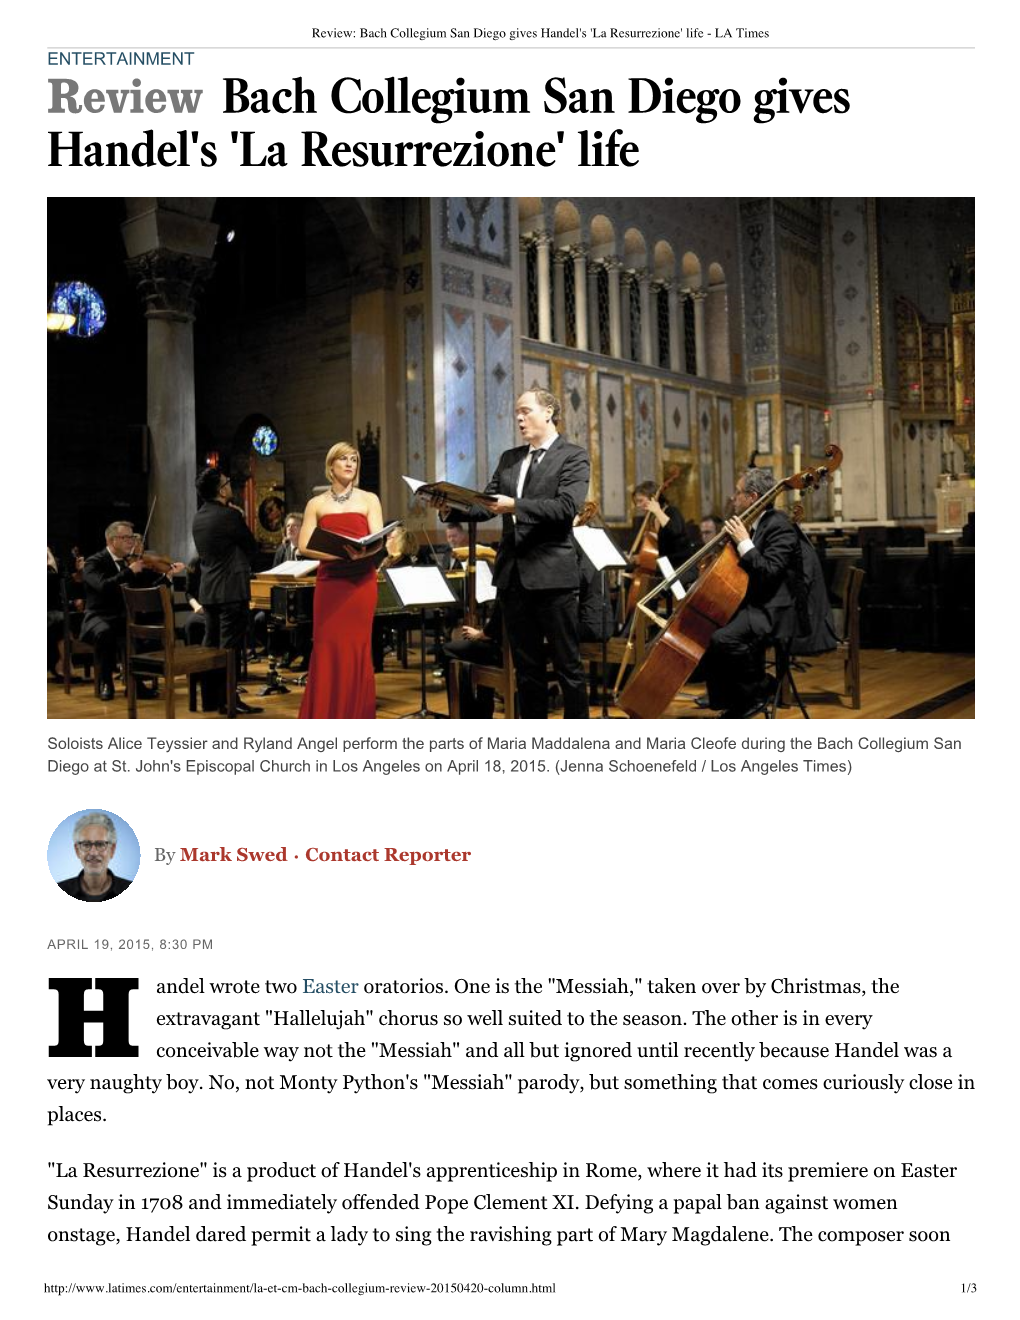 Review Bach Collegium San Diego Gives Handel's 'La Resurrezione' Life